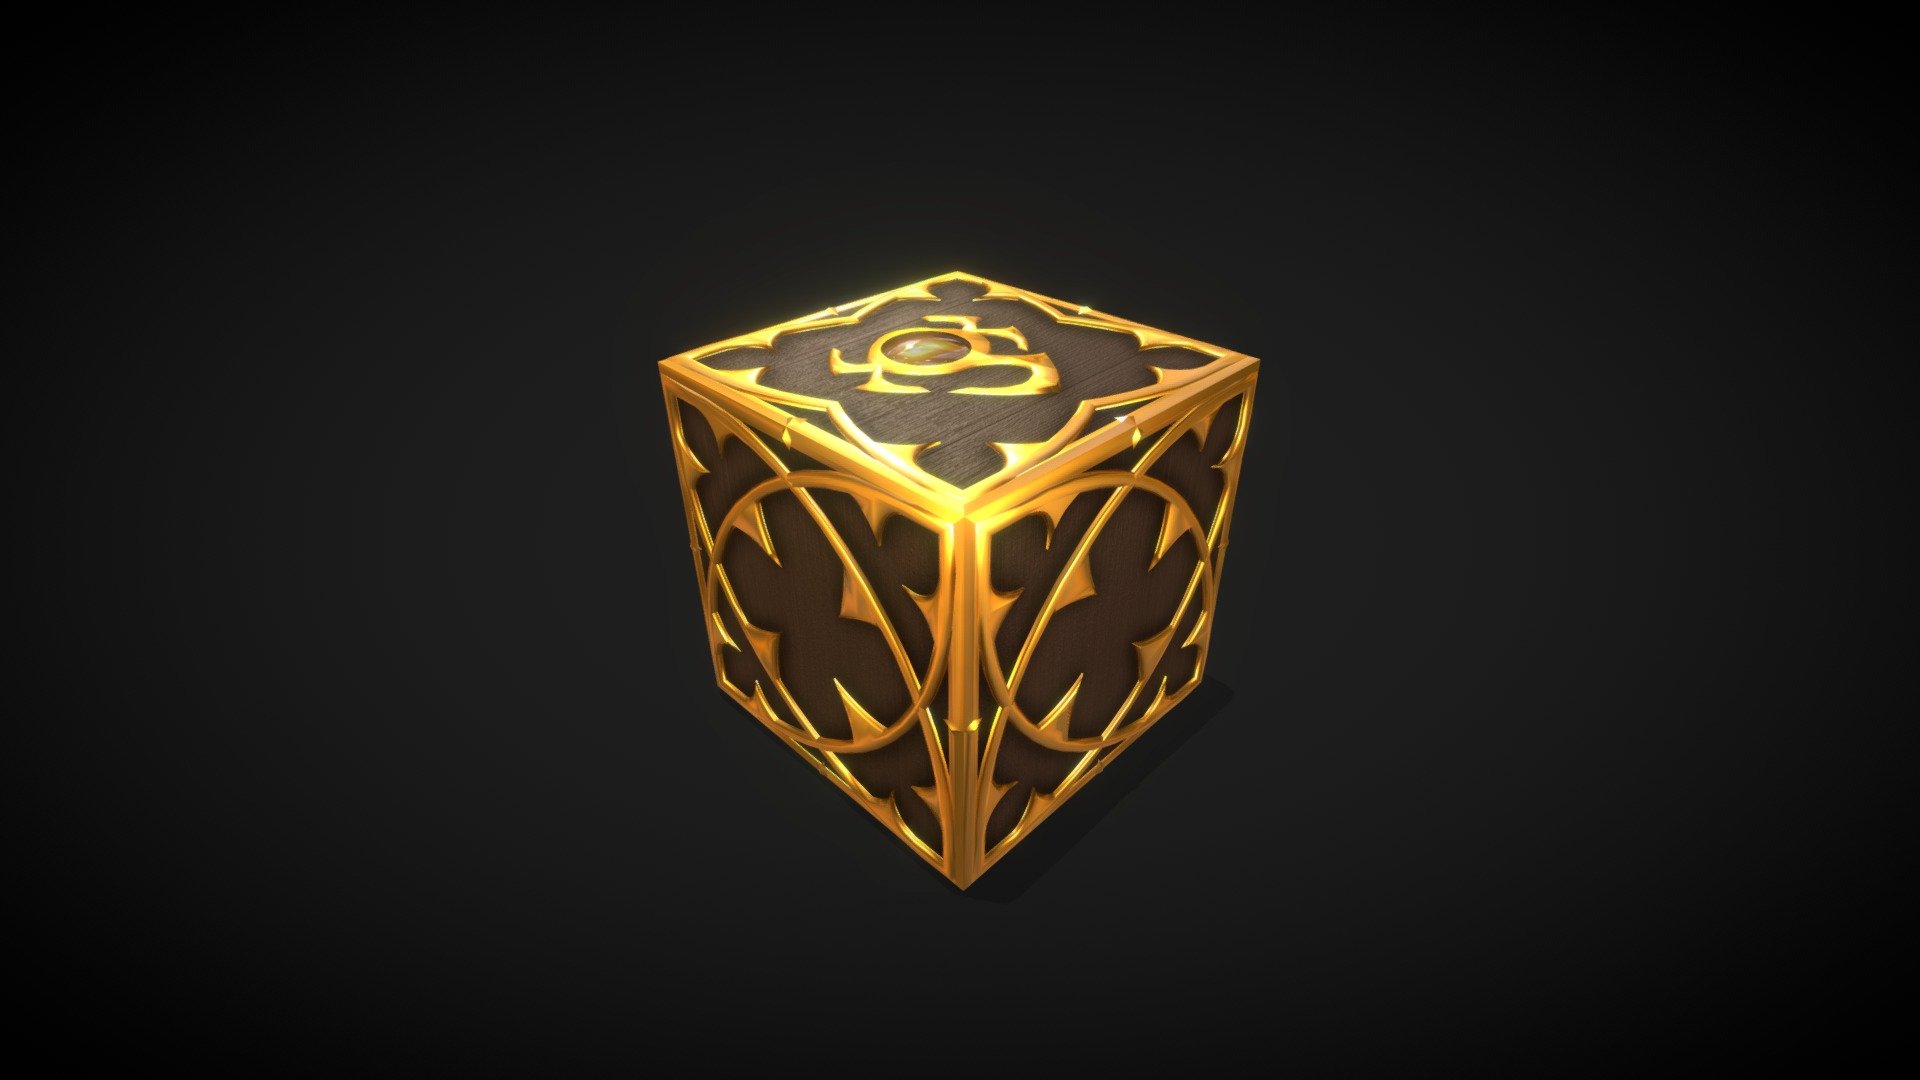 Diablo IV Kanai's Cube full made in blender.

Full article with BONUS stuff on: https://www.artstation.com/pavs - Diablo IV Deckard Kanai's Cube - 3D model by PAVS (@pavs3d) 3d model